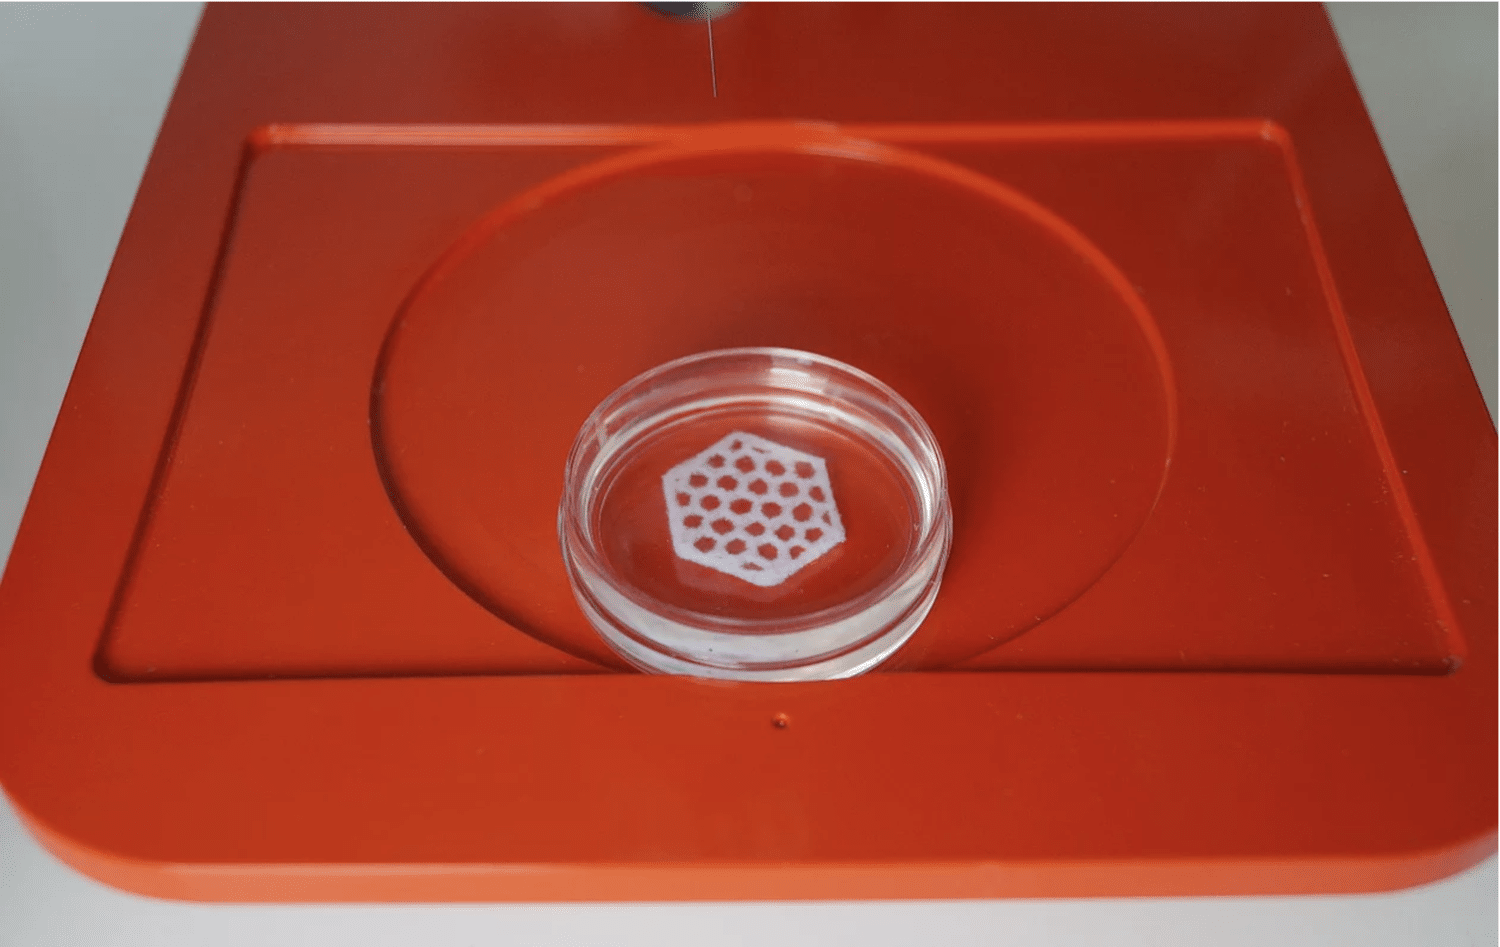 imitating nature - honeycomb bioprinted